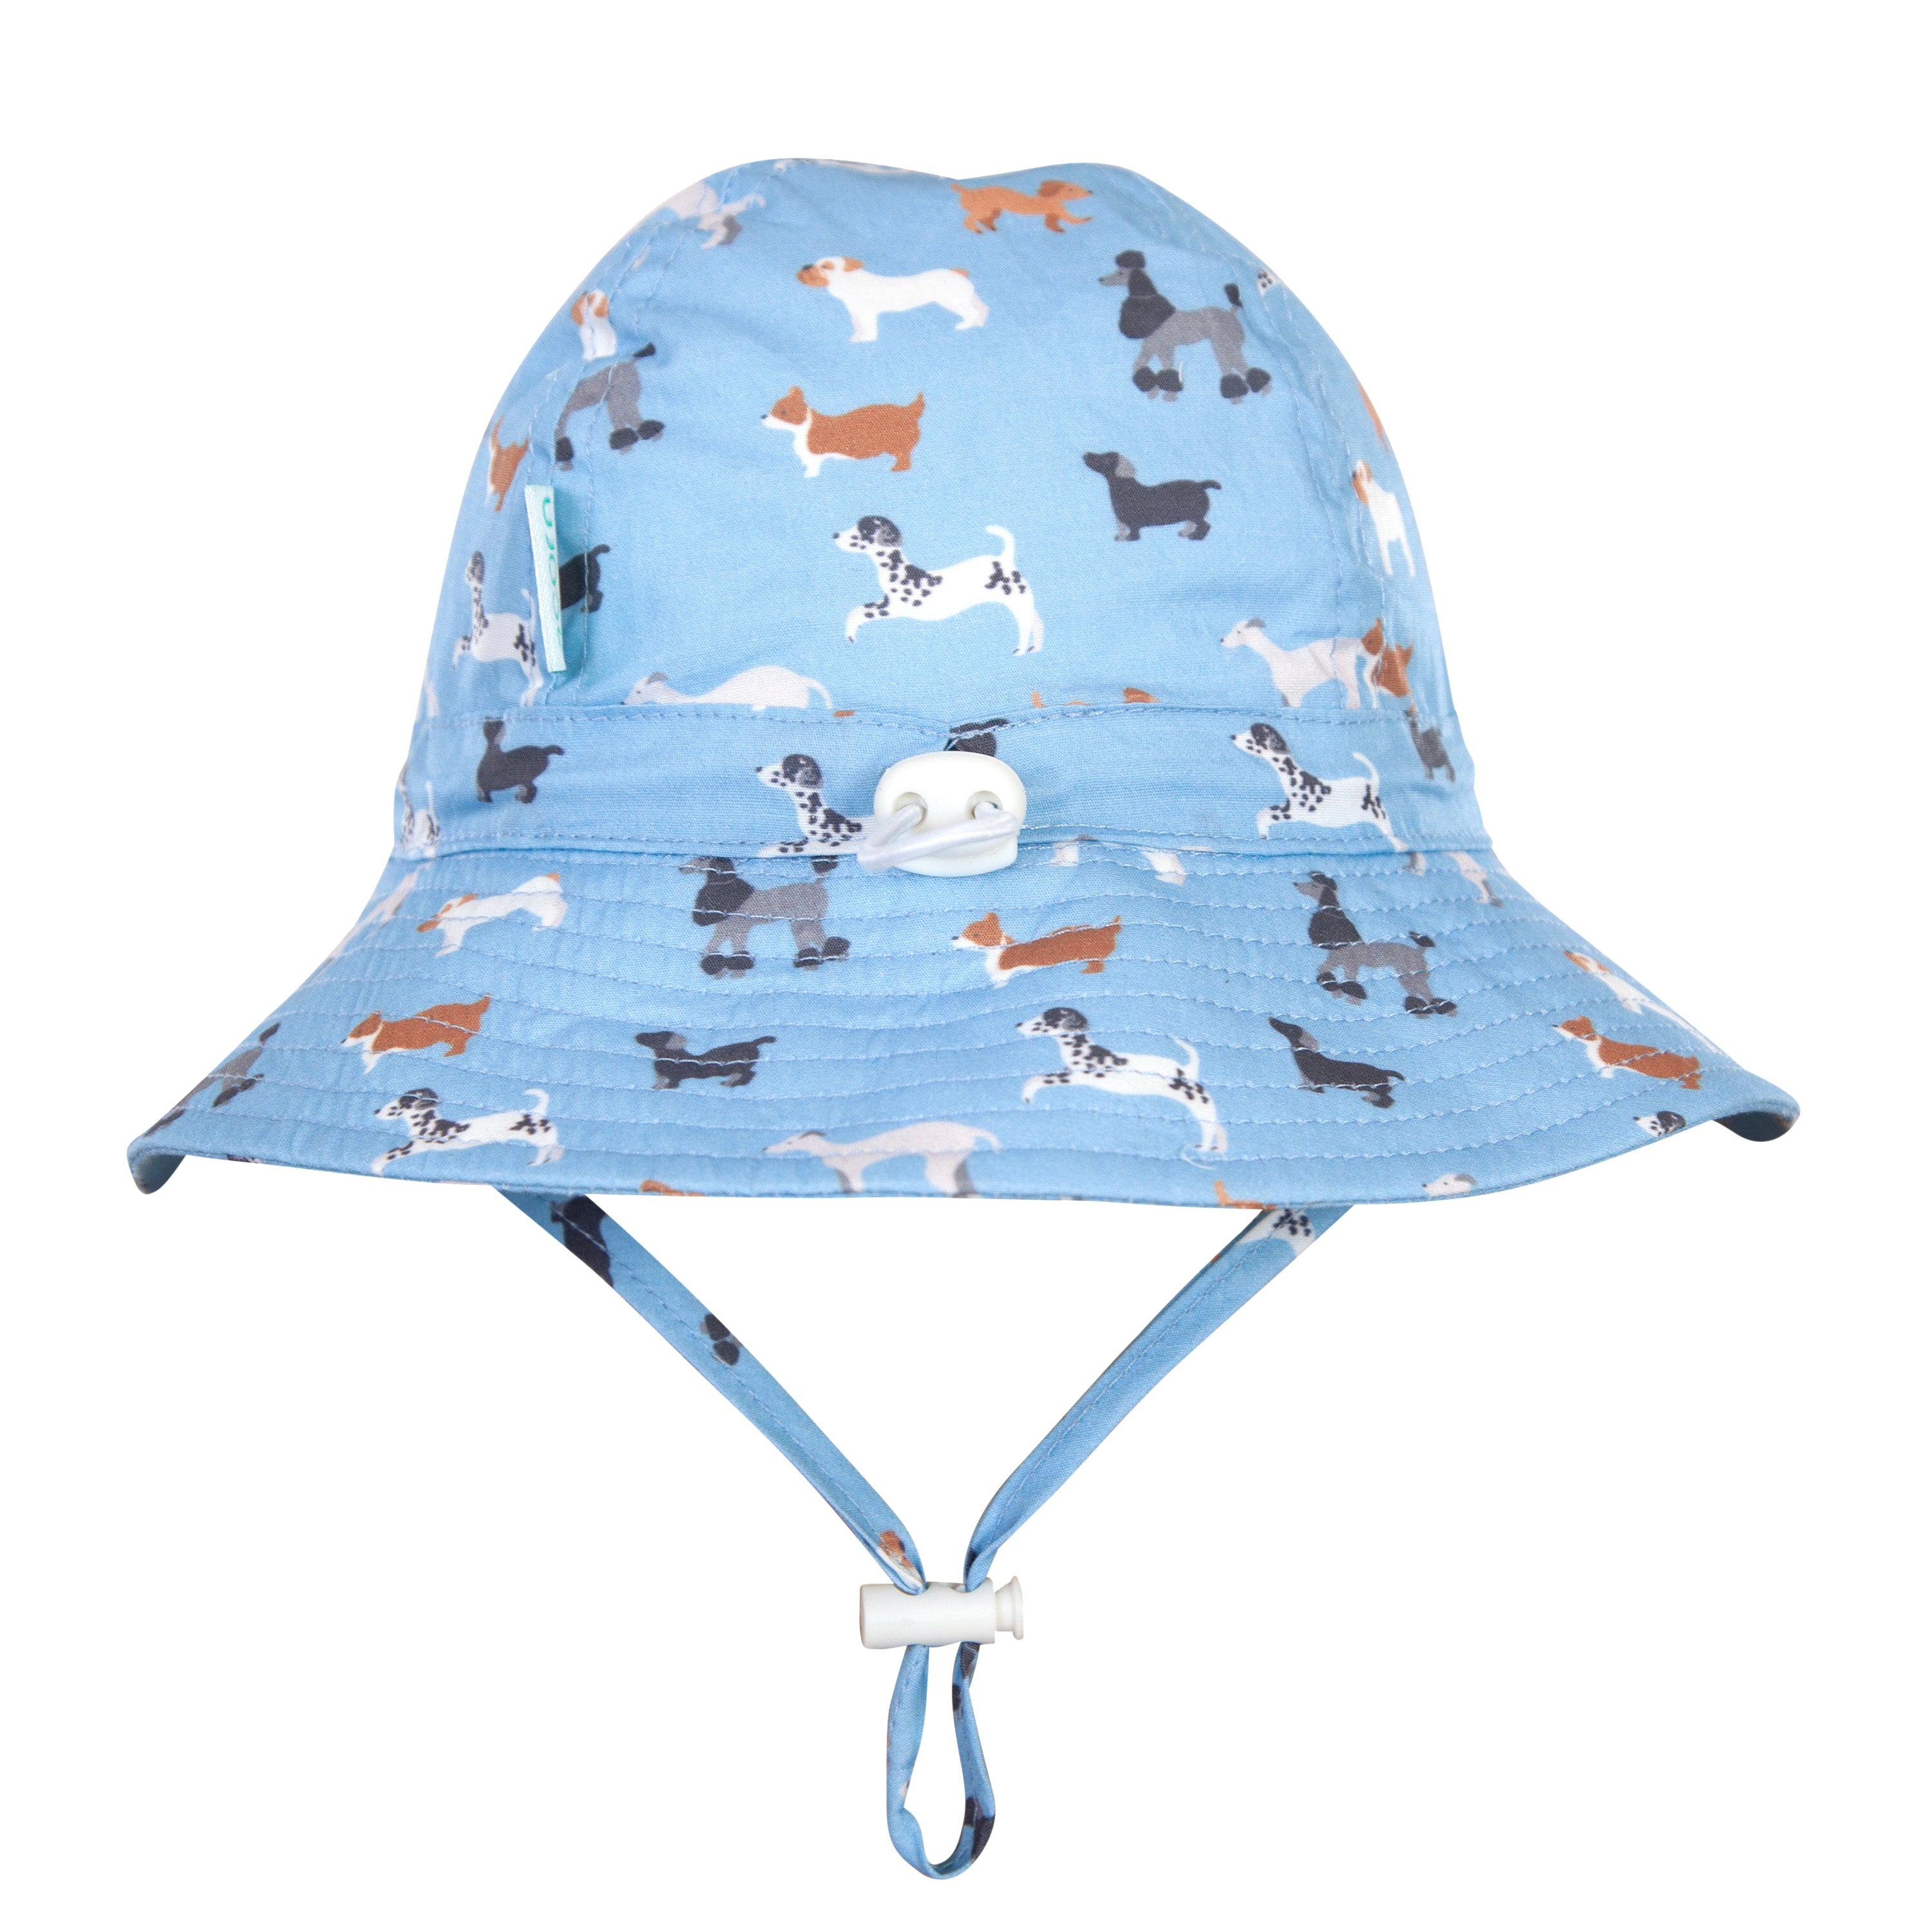 Acorn - Central Park Doggies Wide Brim Infant Hat - Blue/Brown/White